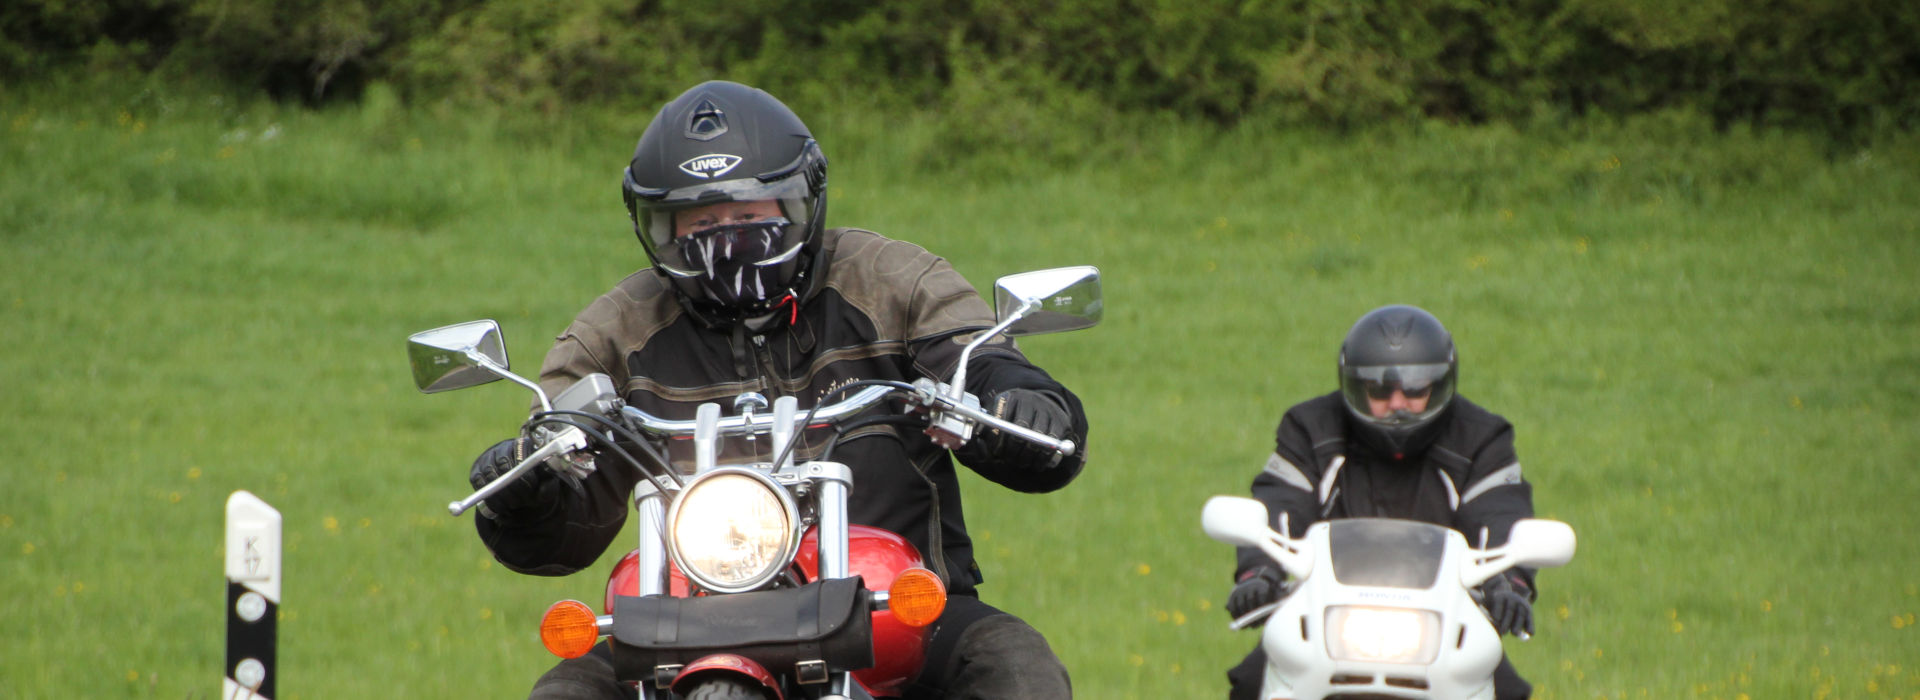 Motorrijschool Motorrijbewijspoint Hengelo motorrijlessen